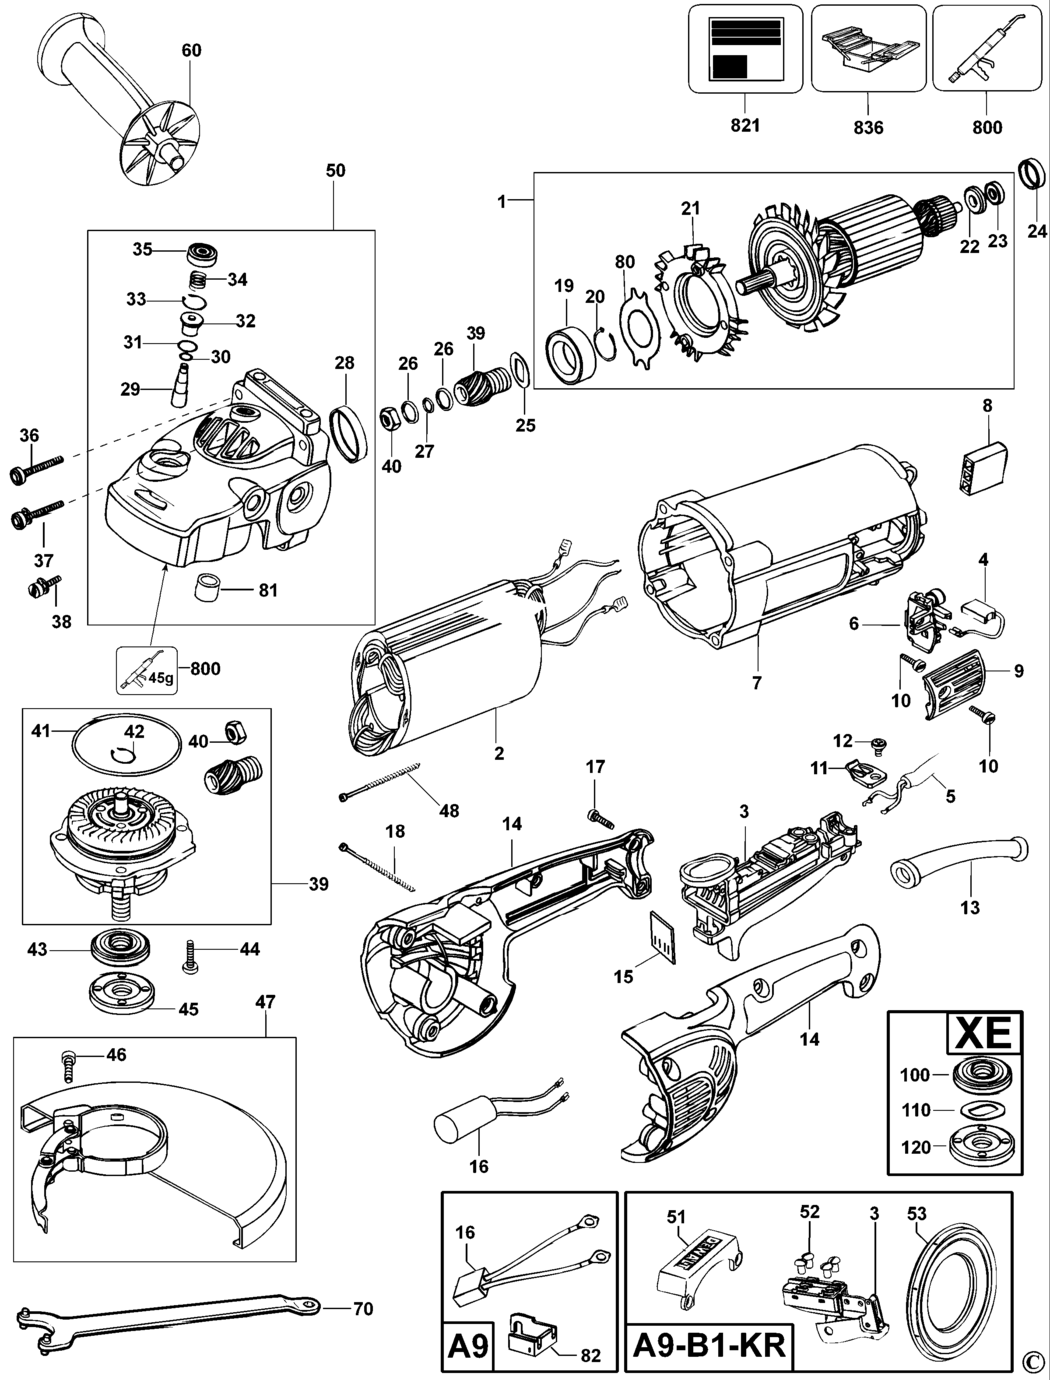 Dewalt D28414 Type 1 Angle Grinder Spare Parts